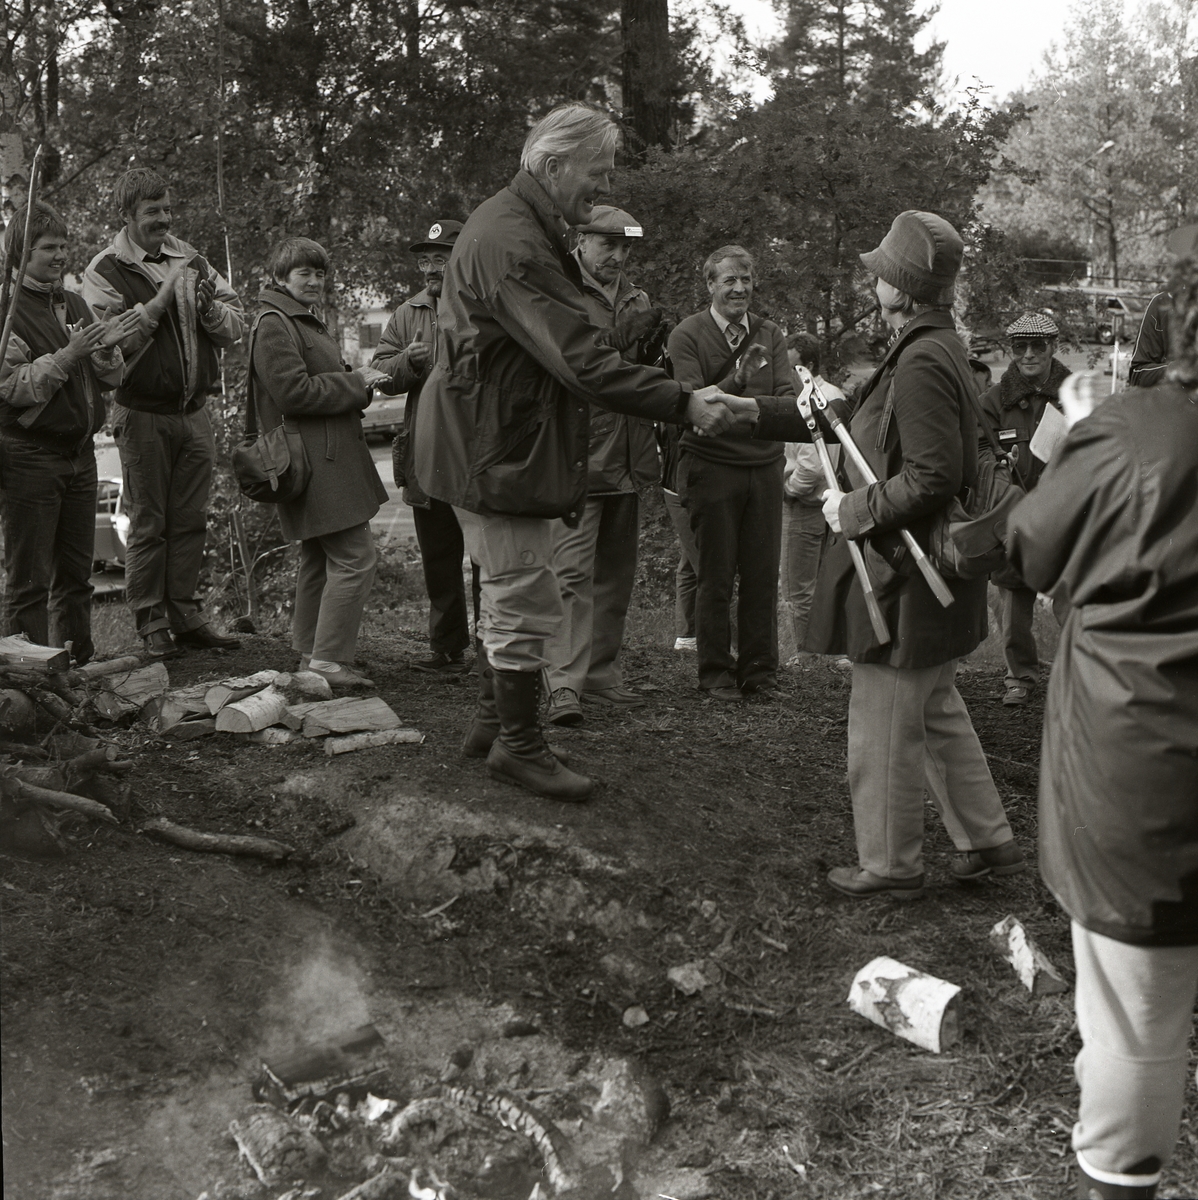 Mellanskog, Sånga-Säby, 28-29 september 1985. En man och en kvinna tar varandra i hand. Kvinnan håller i en grensax. Runt dem står en grupp människor och applåderar. På marken ligger ved och det brinner en brasa.